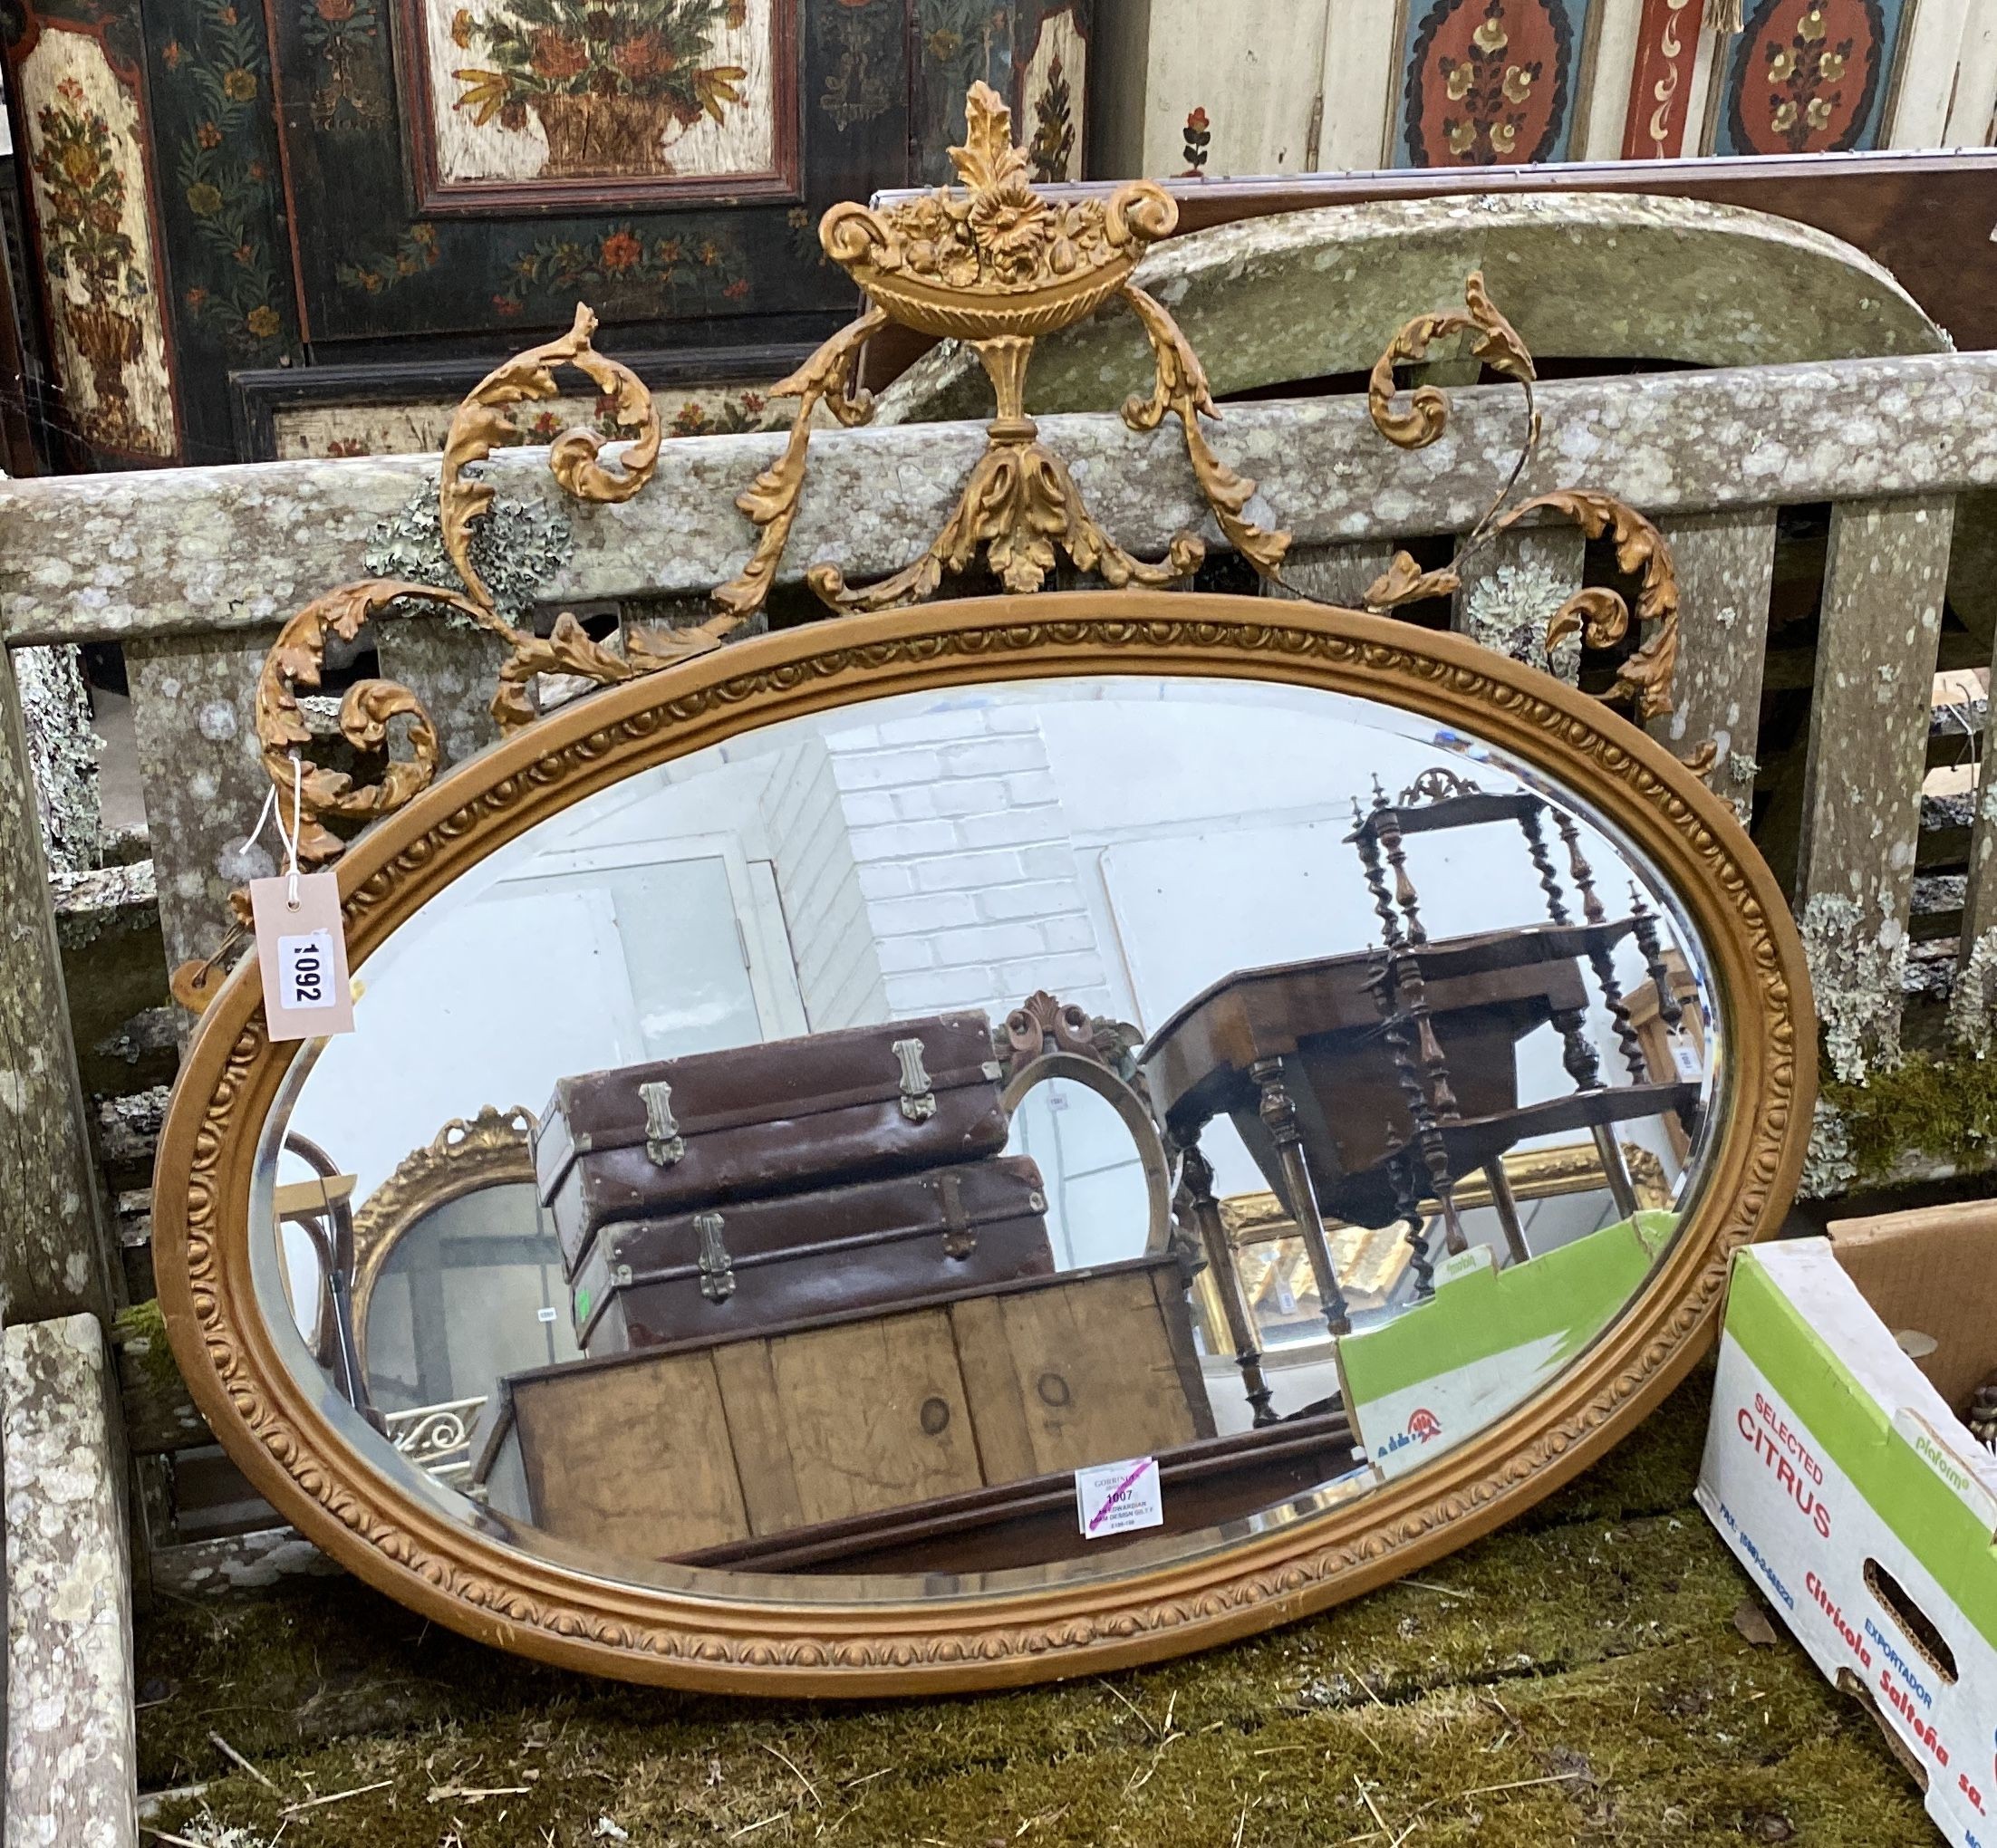 An Edwardian Adam design gilt framed oval mirror, width 82cm, height 74cm